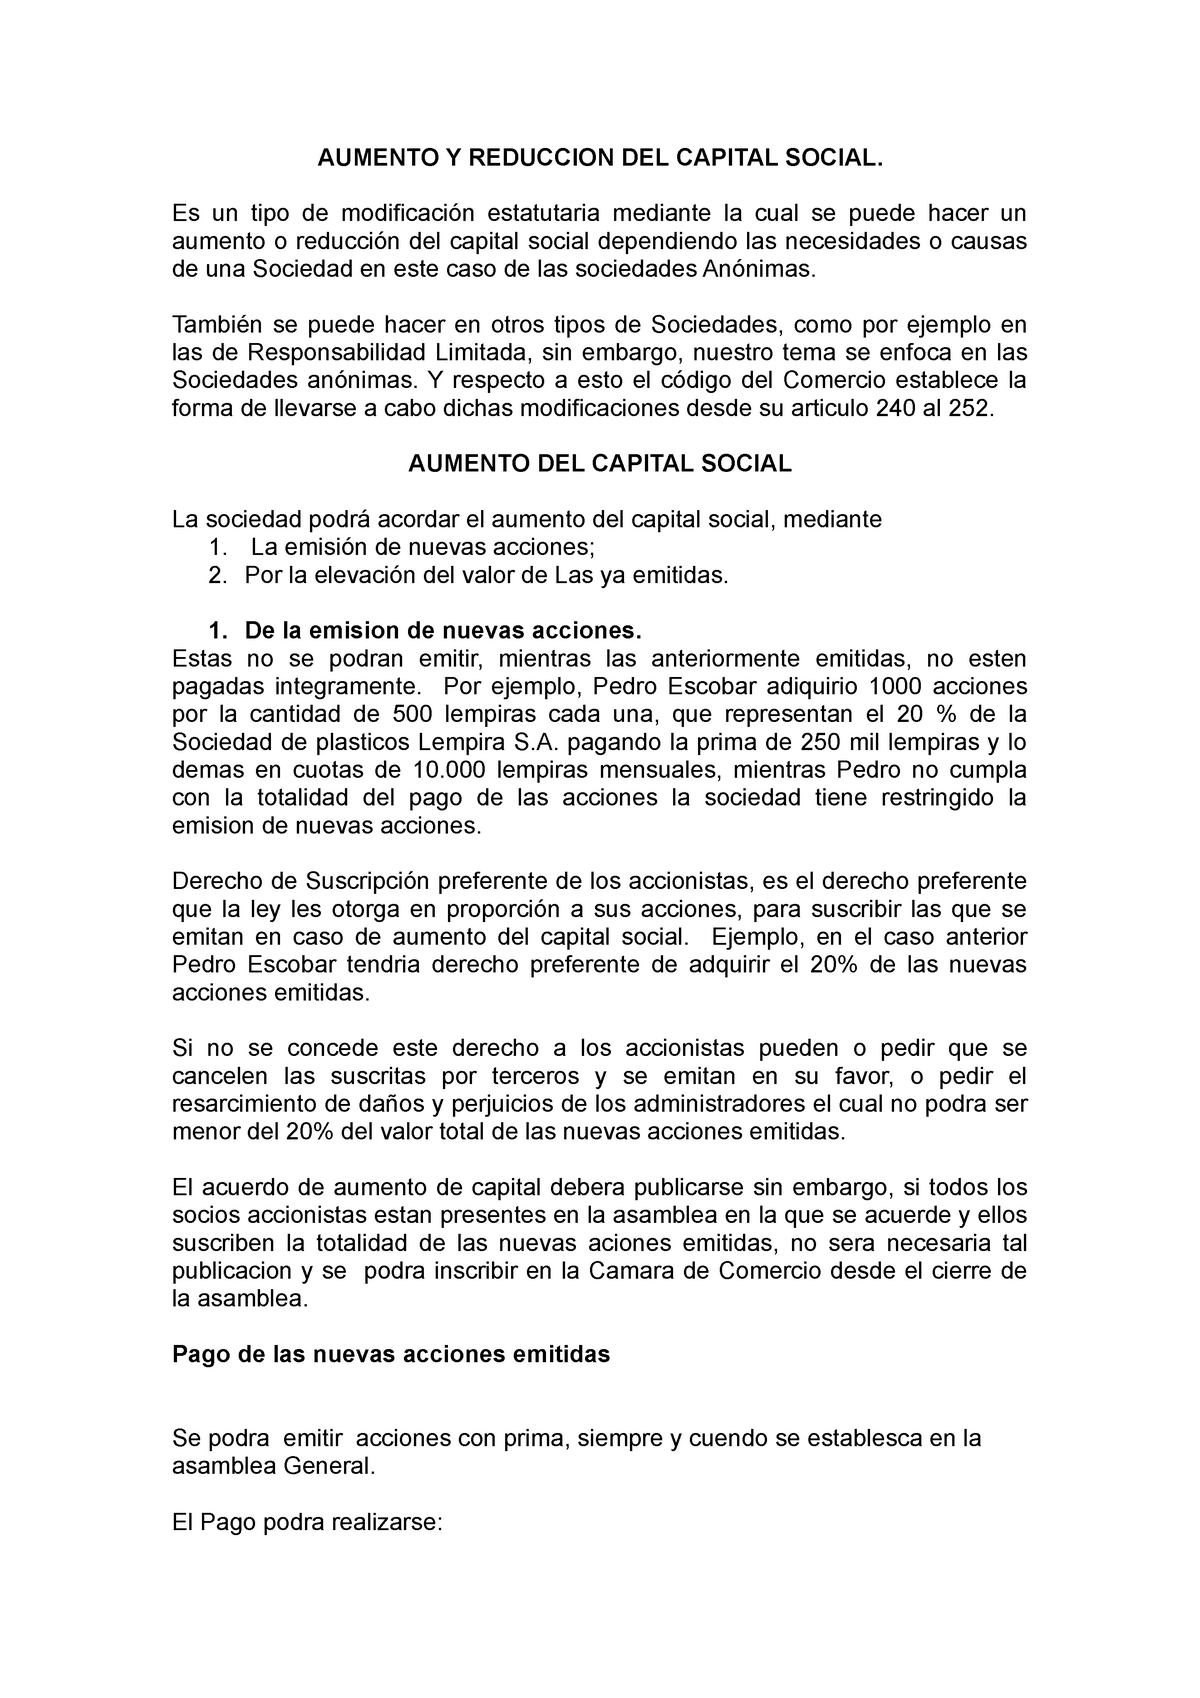 Aumento Y Reduccion Del Capital Social Aumento Y Reduccion Del Capital Social Es Un Tipo De 3298